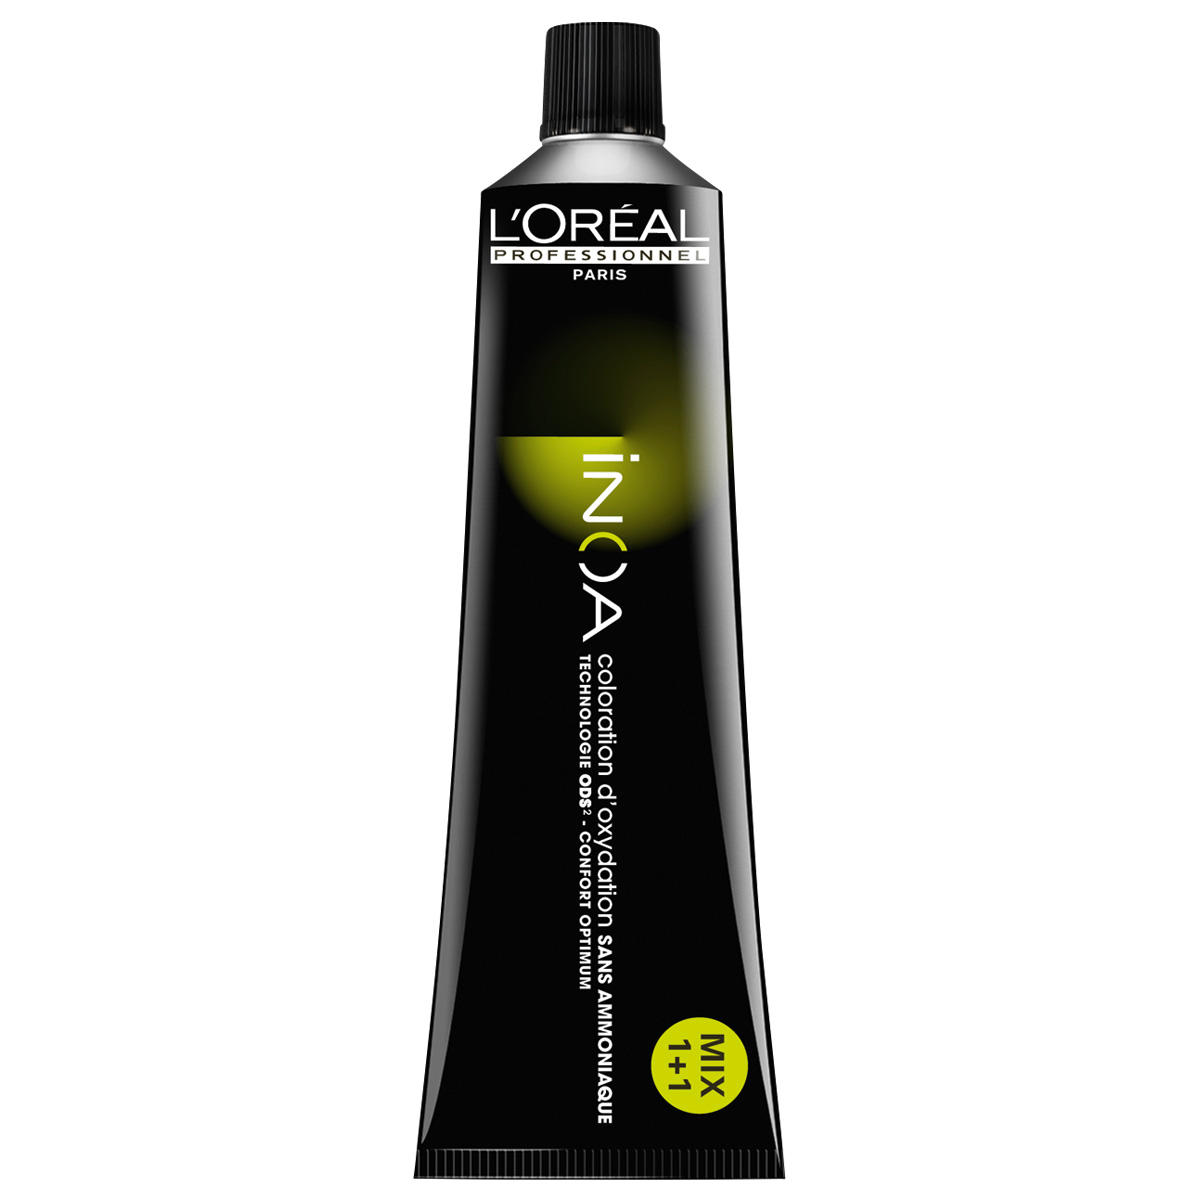 L'Oréal Professionnel Paris Coloration 6,40 Dunkelblond Intensiv Kupfer, Tube 60 ml - 1